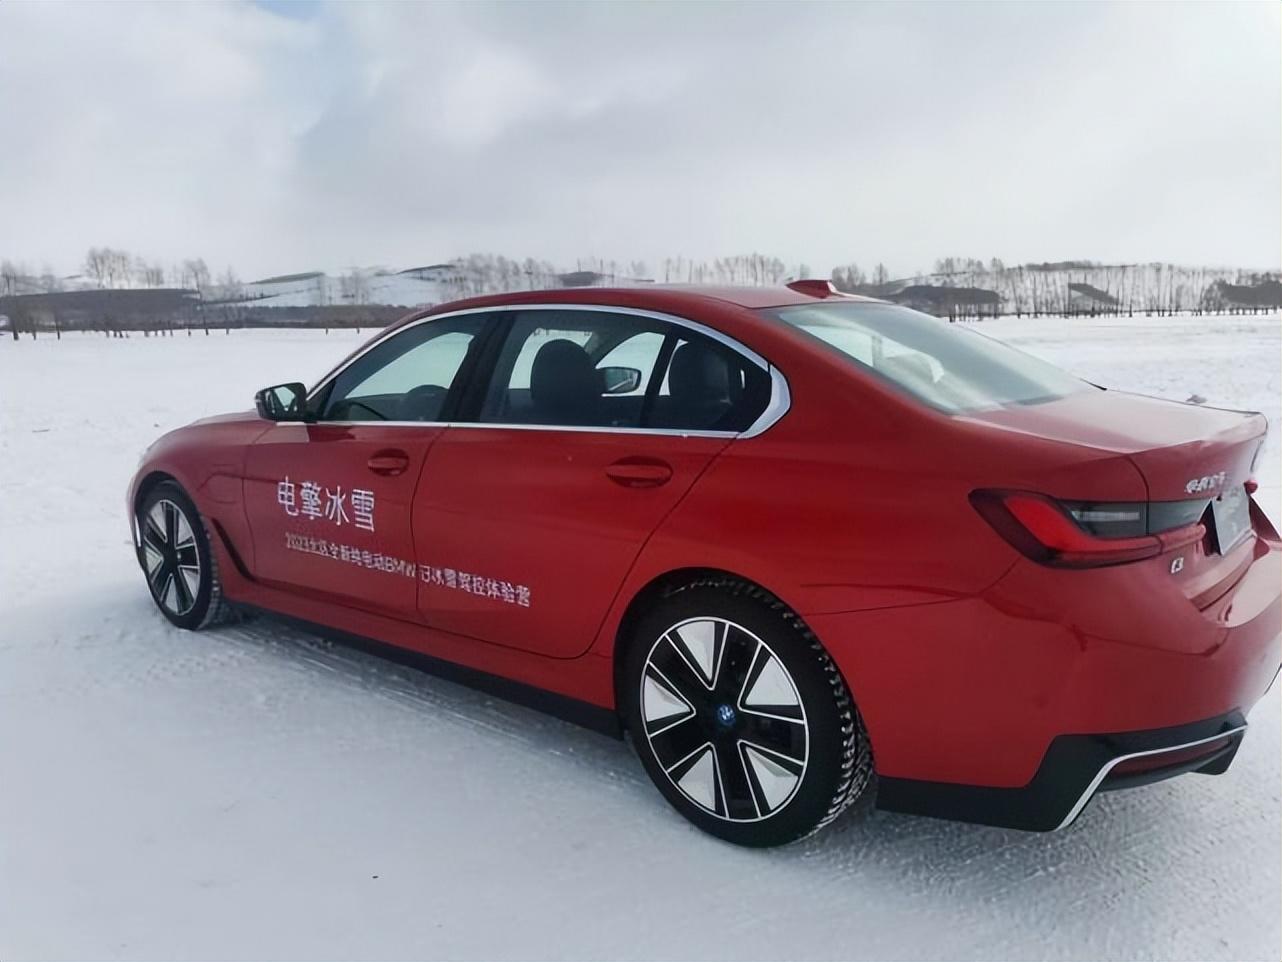 纯电亦能畅享冰雪驾趣， 牙克石体验全新BMW i3